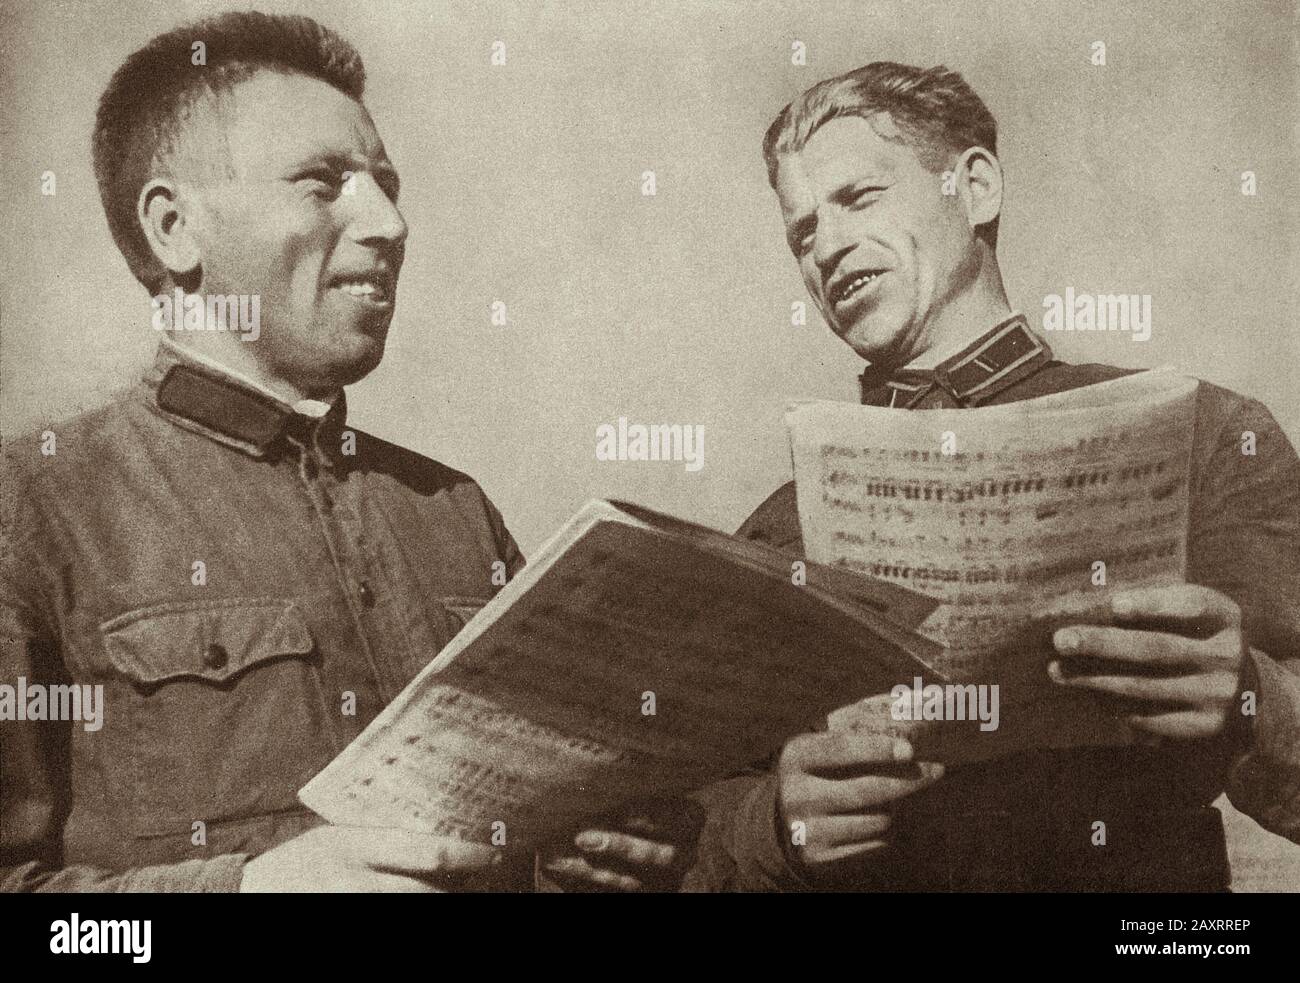 Esercito rosso in 1930s. Dal libro di propaganda sovietico del 1937. Tempo libero culturale dei soldati rossi dell'esercito. Foto Stock